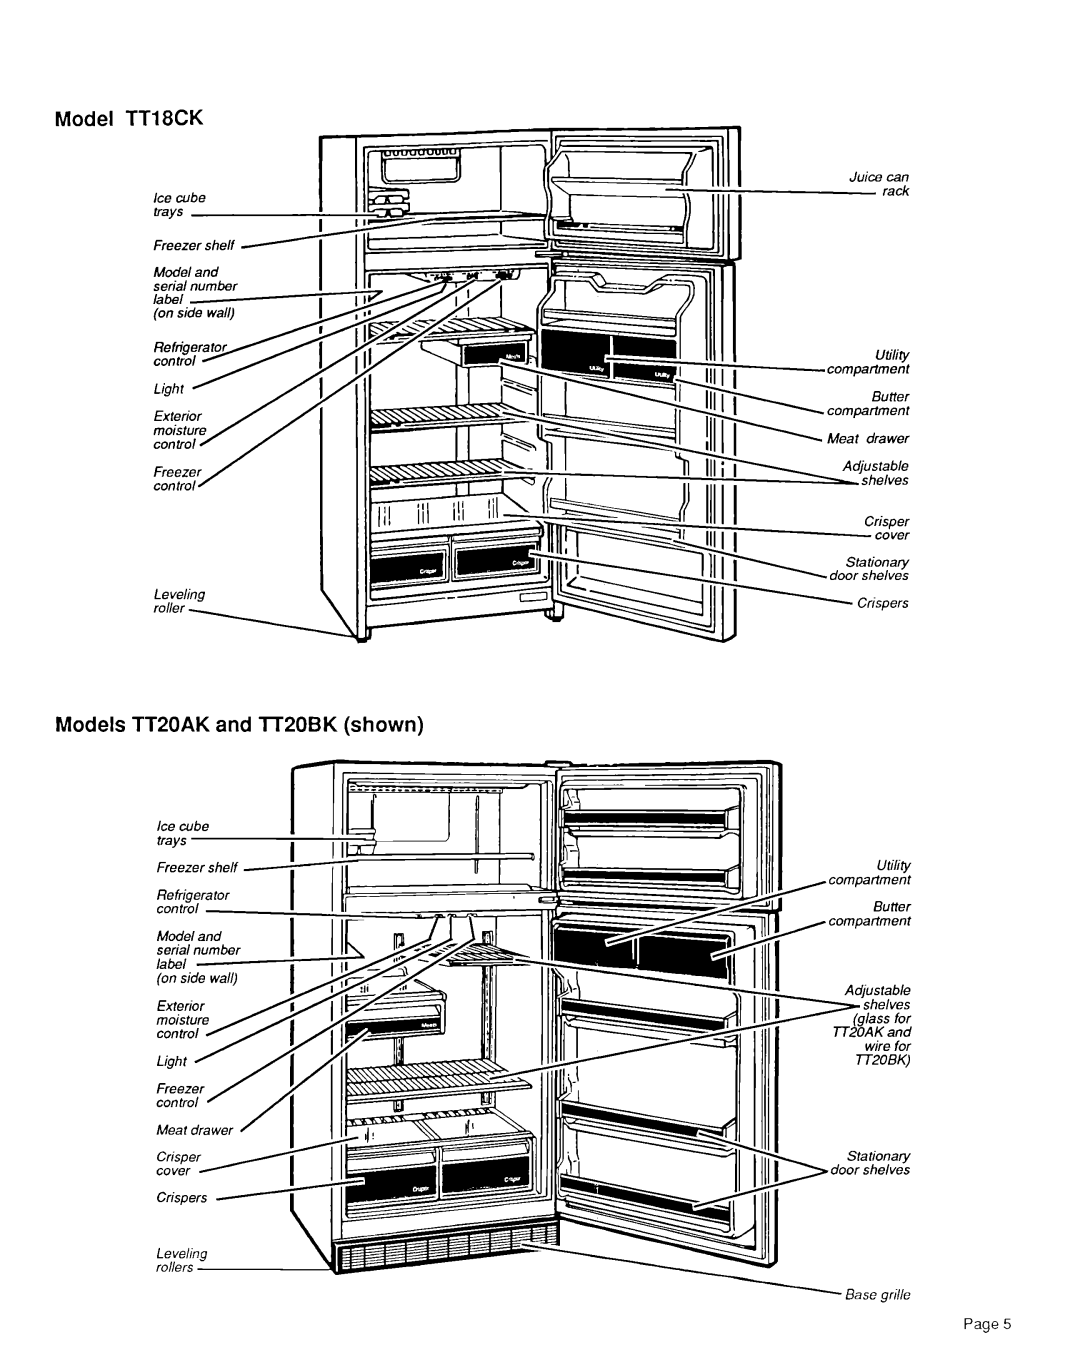 Whirlpool TT14EK, TTI4CK, TT2OBK, TTI 6CK, TTI 6DK installation instructions Model TT18CK, Models TT20AK and lT20BK shown 